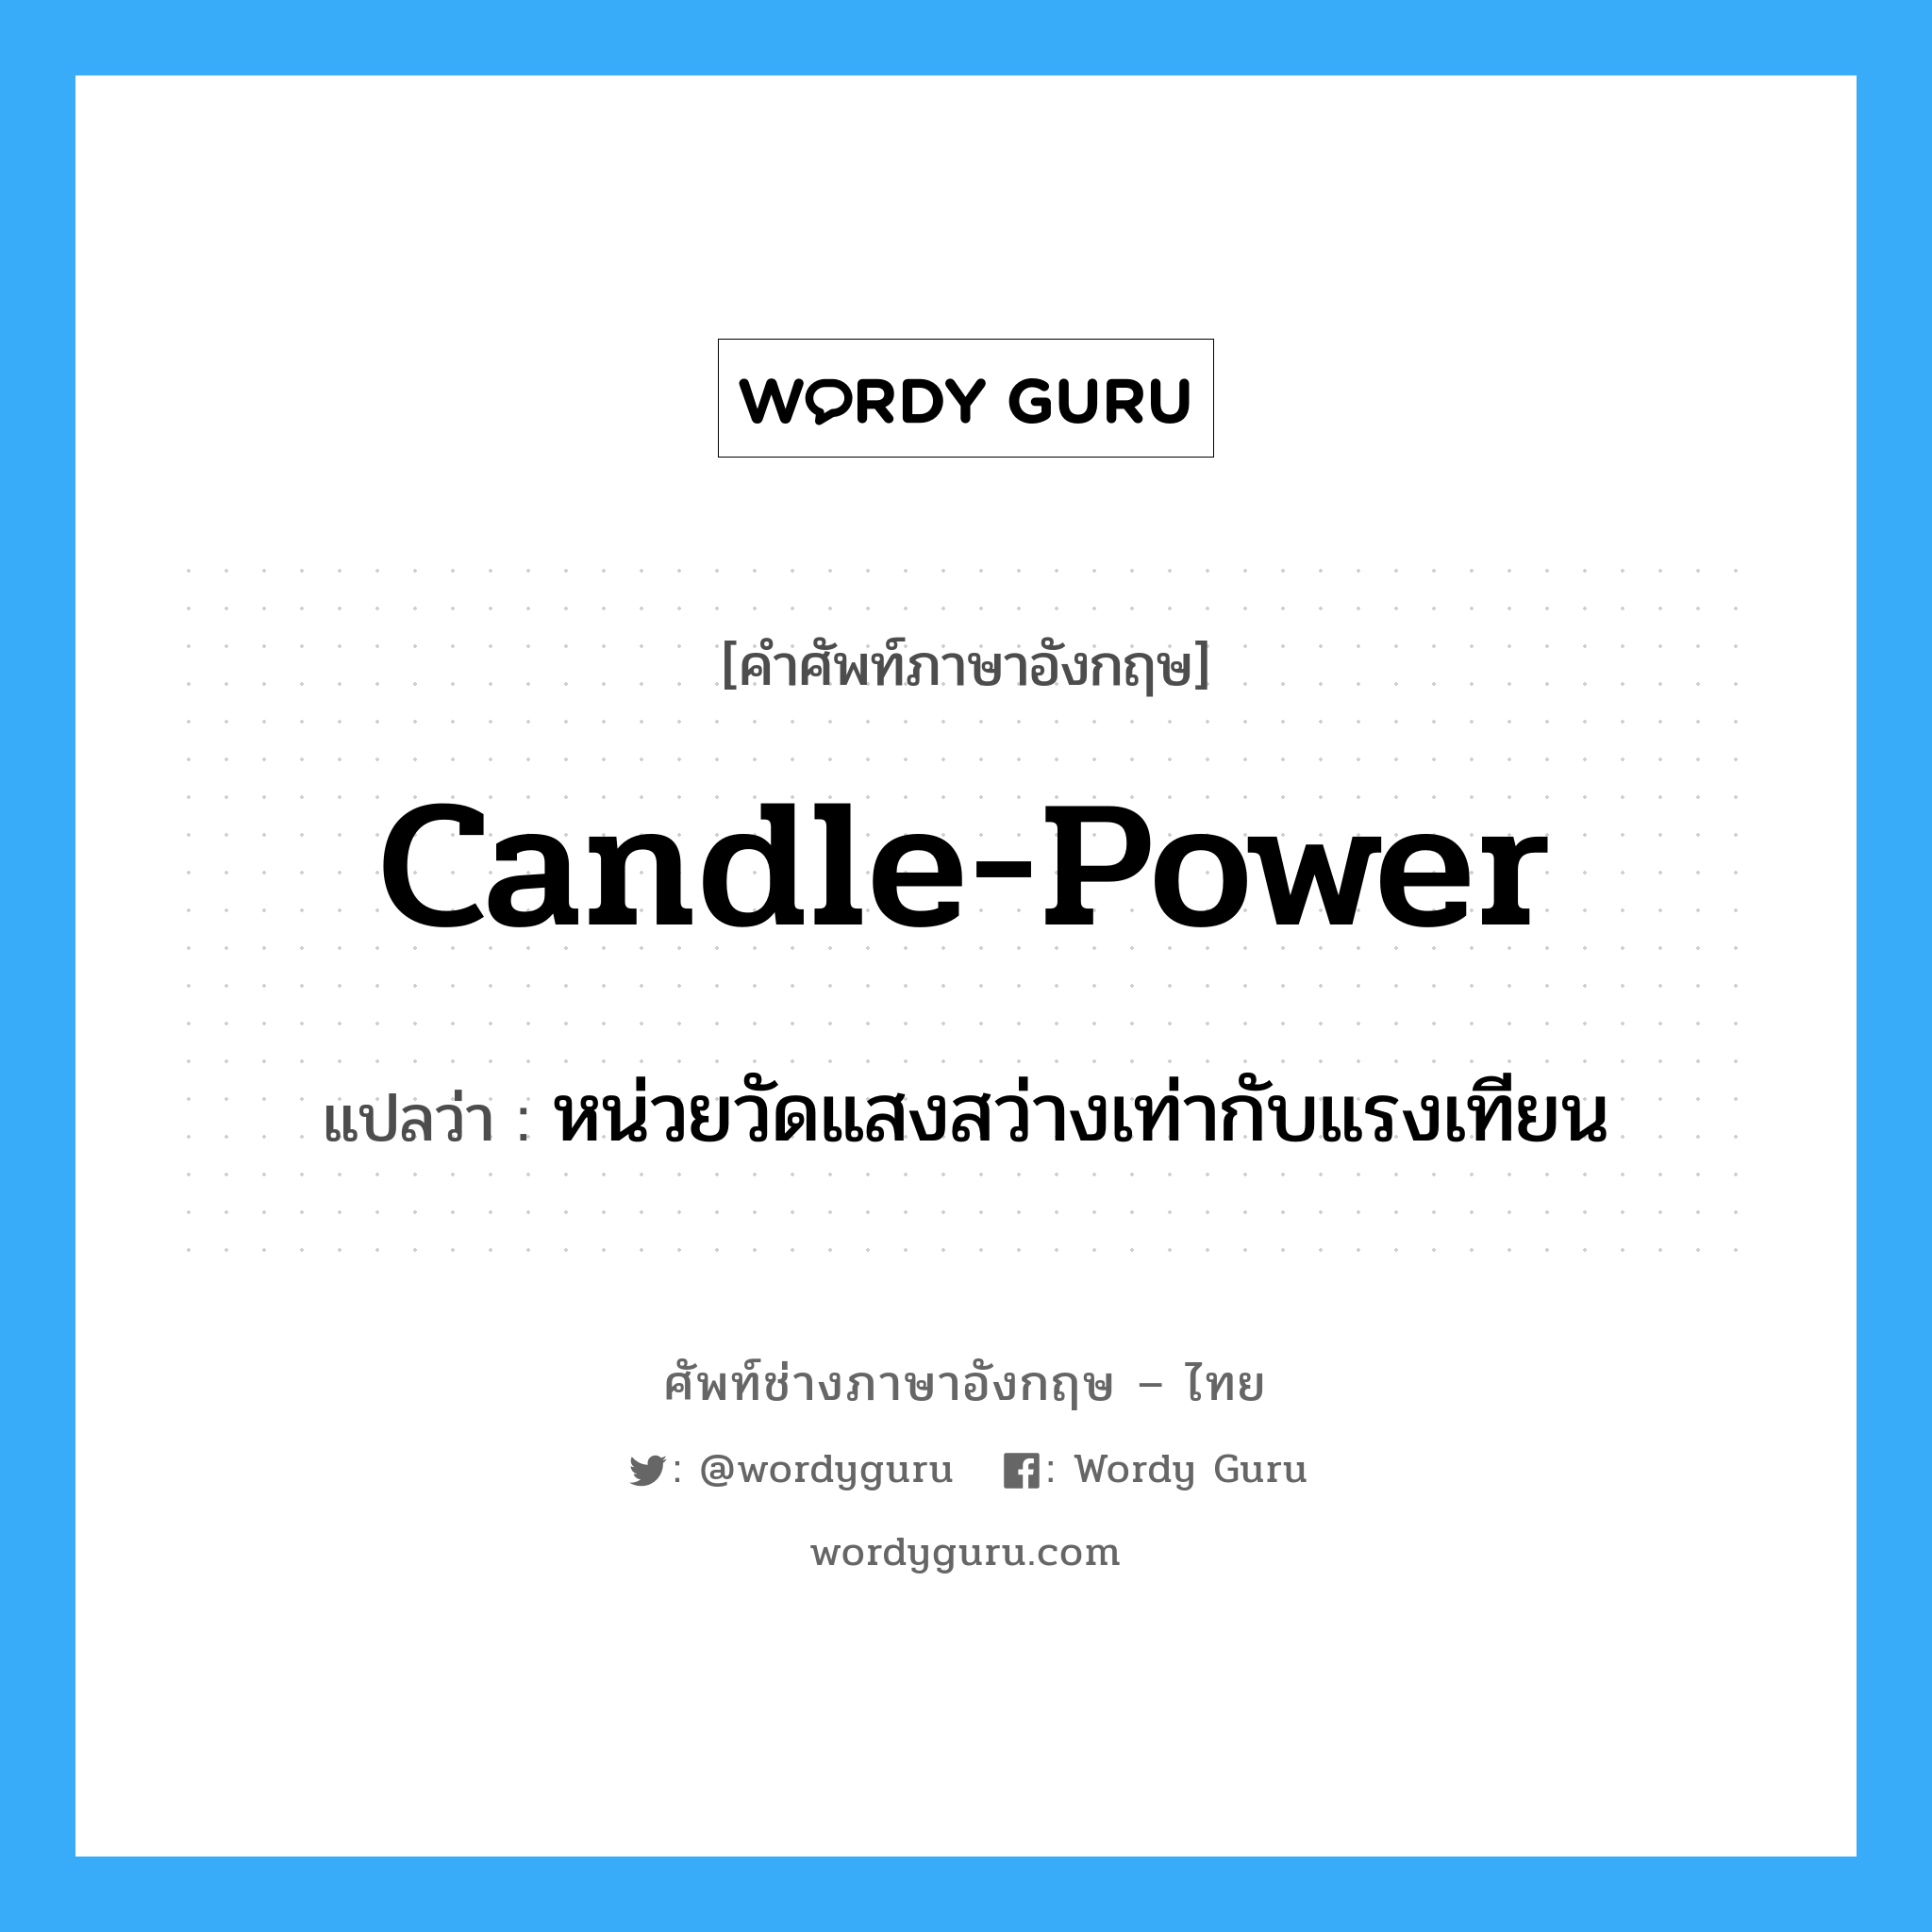 candle-power แปลว่า?, คำศัพท์ช่างภาษาอังกฤษ - ไทย candle-power คำศัพท์ภาษาอังกฤษ candle-power แปลว่า หน่วยวัดแสงสว่างเท่ากับแรงเทียน